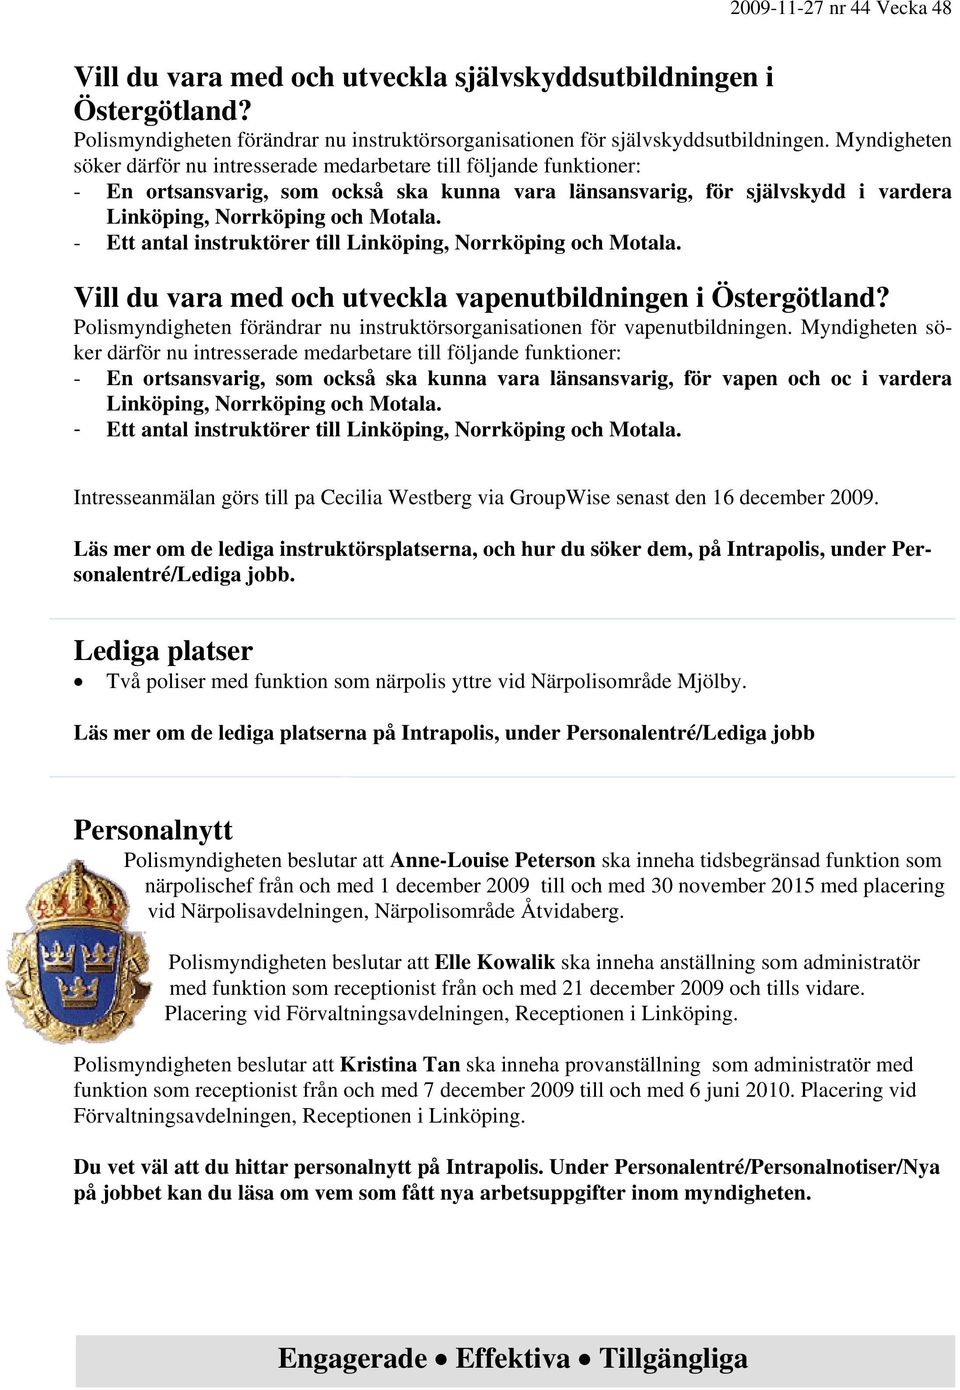 - Ett antal instruktörer till Linköping, Norrköping och Motala. Vill du vara med och utveckla vapenutbildningen i Östergötland?